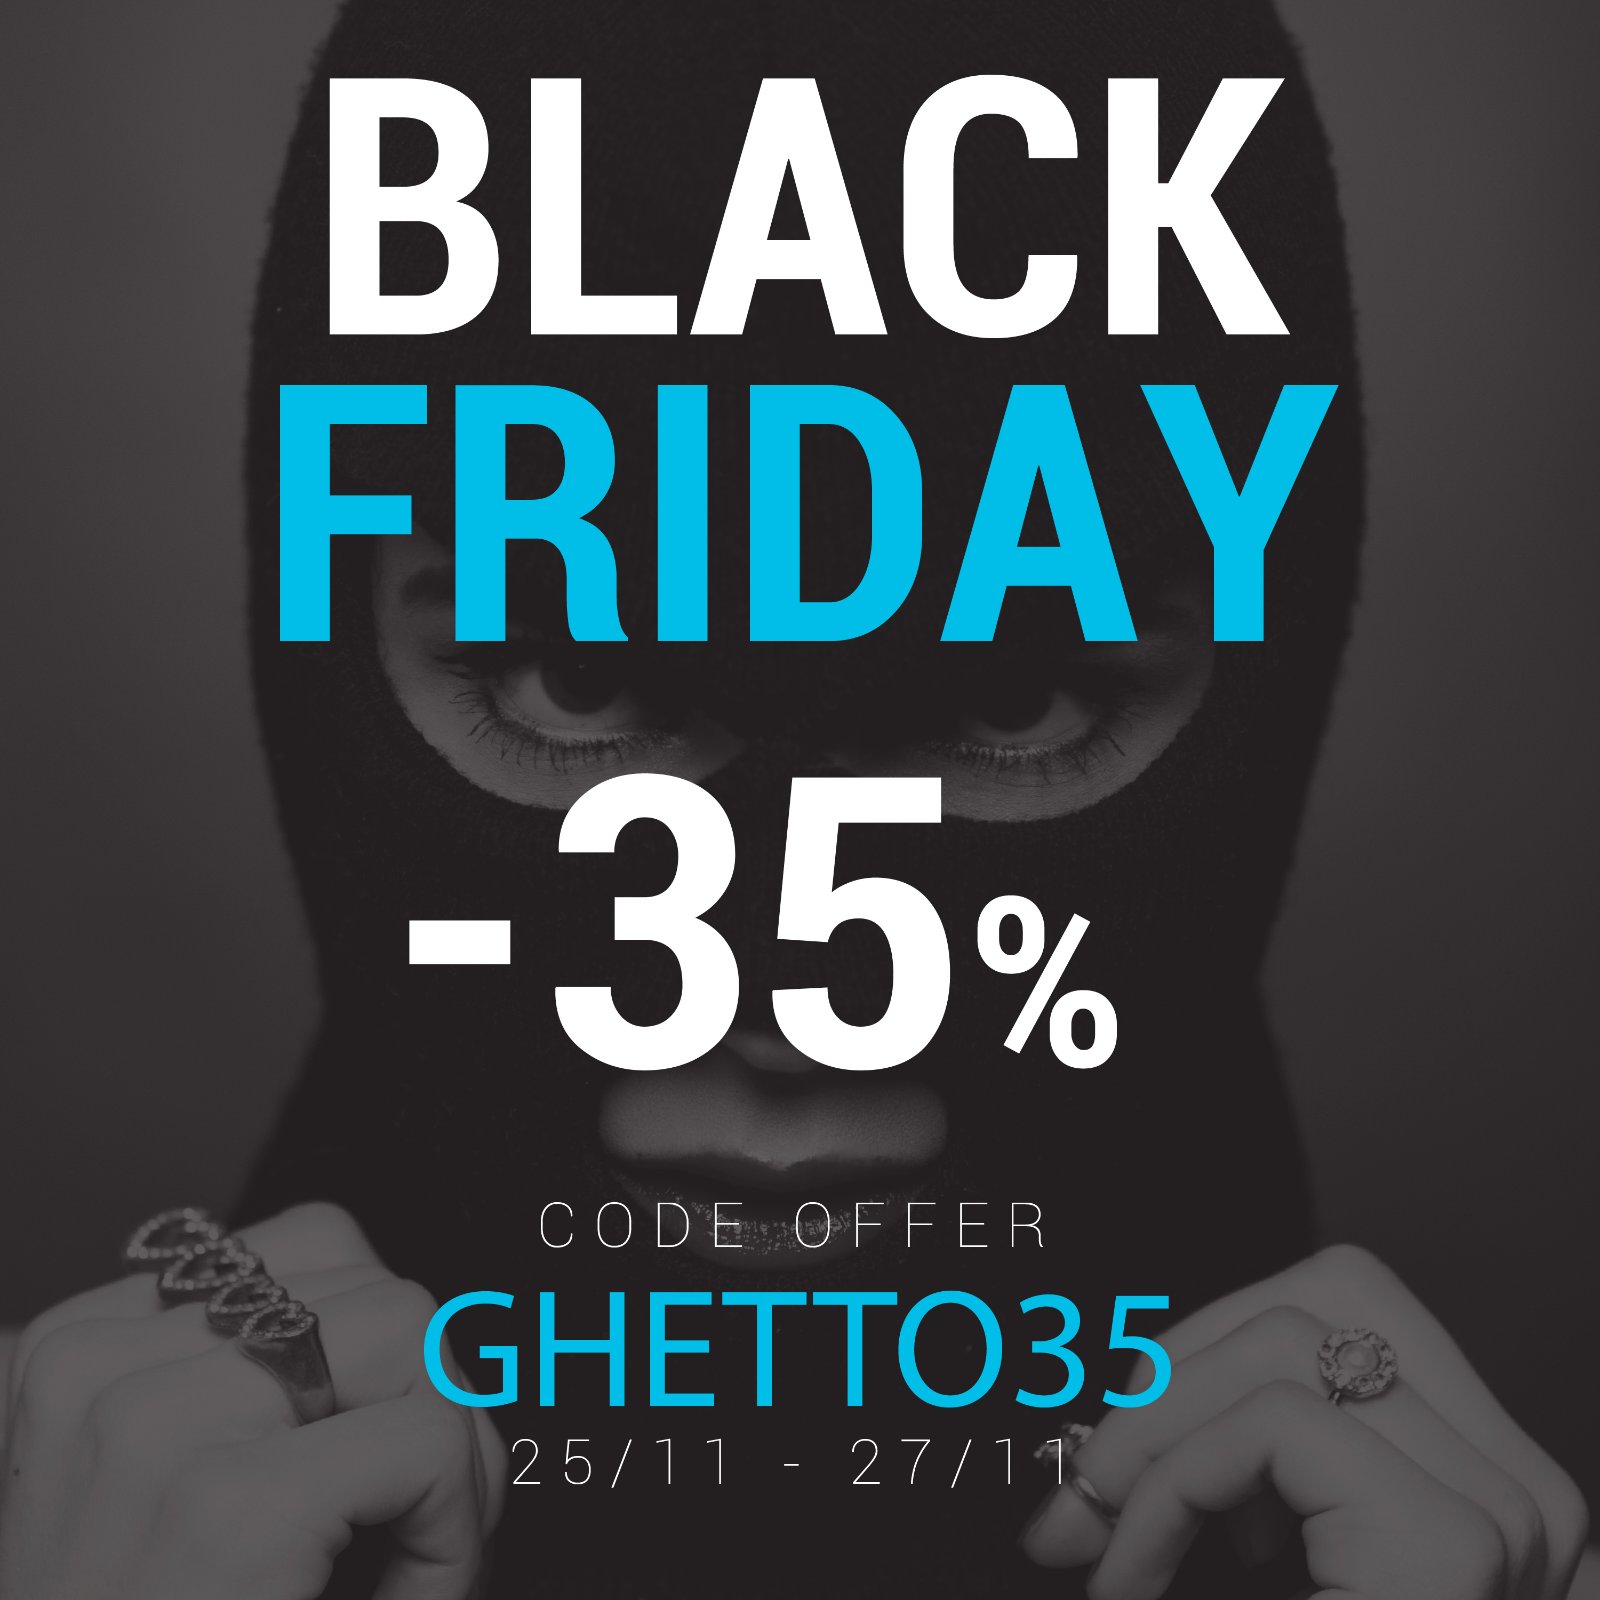 Αυτή τη στιγμή βλέπετε Black Friday -35% σε όλο το Ghetto.gr